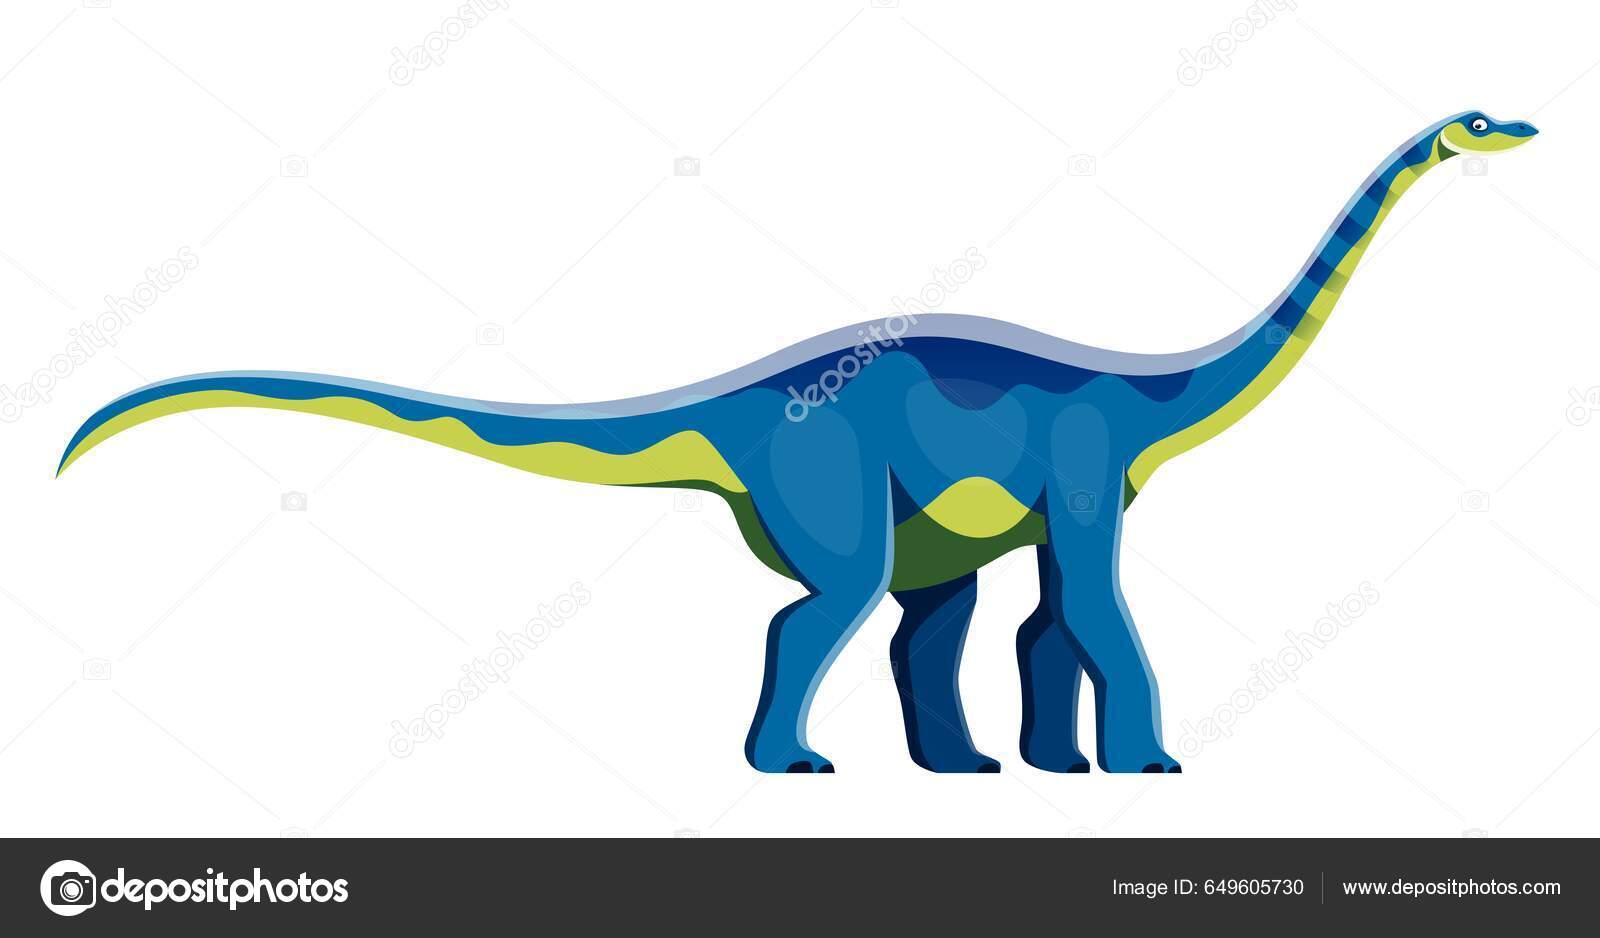 Criatura Pré-histórica Ou Dinossauro Na Natureza Selvagem. Desenho